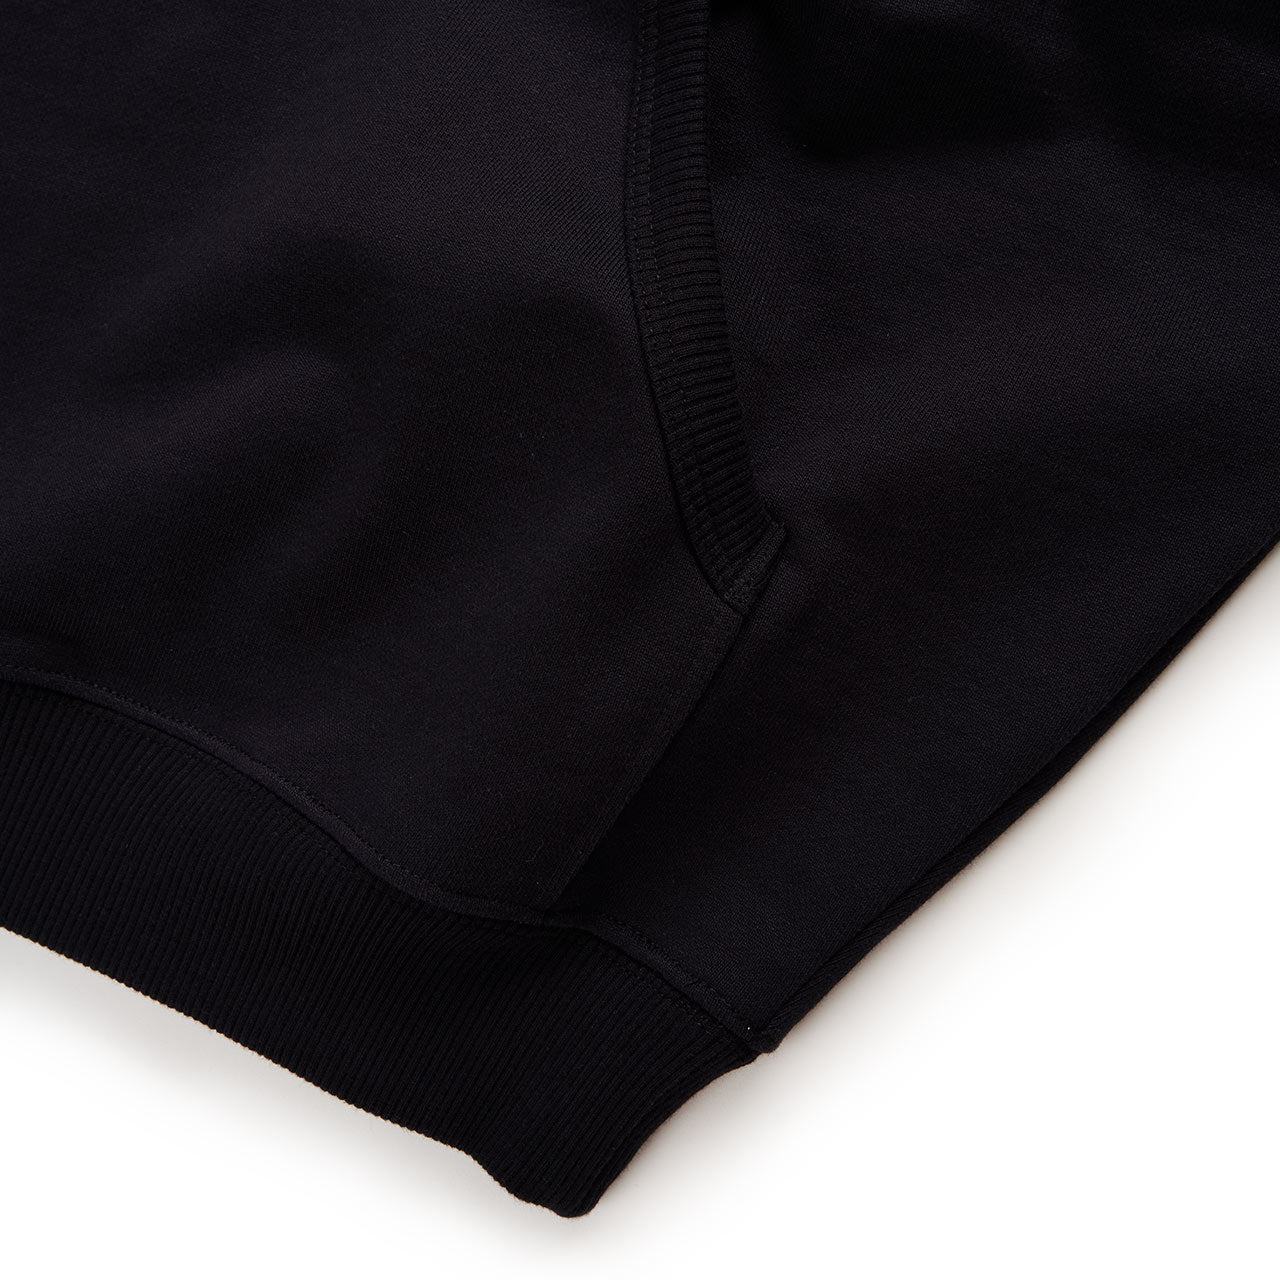 rassvet rassvet emb hoodie (black)